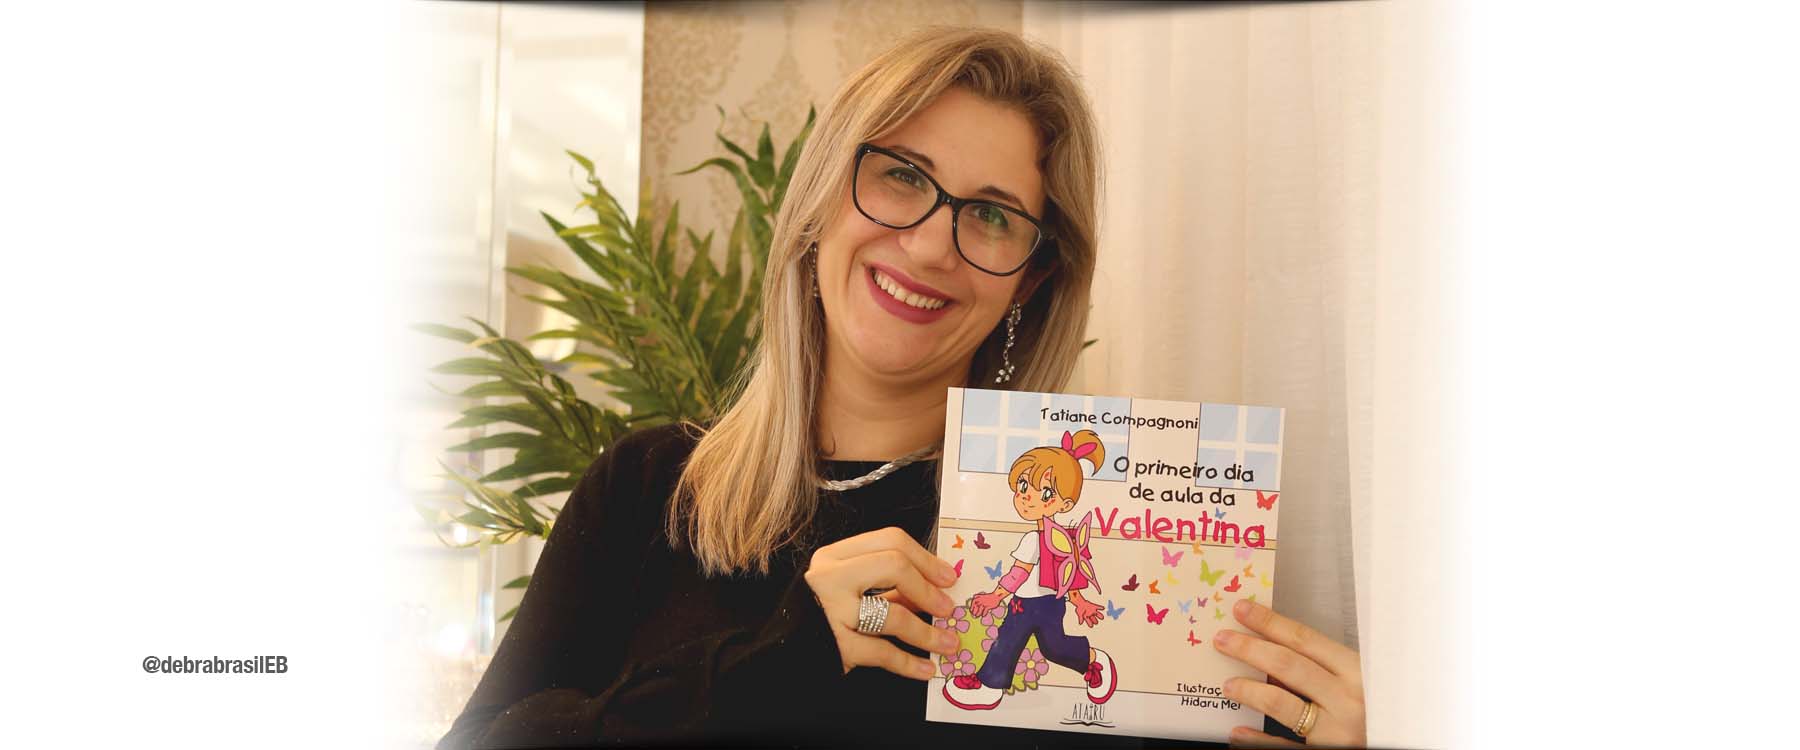 Tatiane Compagnoni, mãe da bebê Valentina que nasceu com epidermólise bolhosa (EB) distrófica recessiva, segura o livro que ela escreveu “O primeiro dia de aula da Valentina”